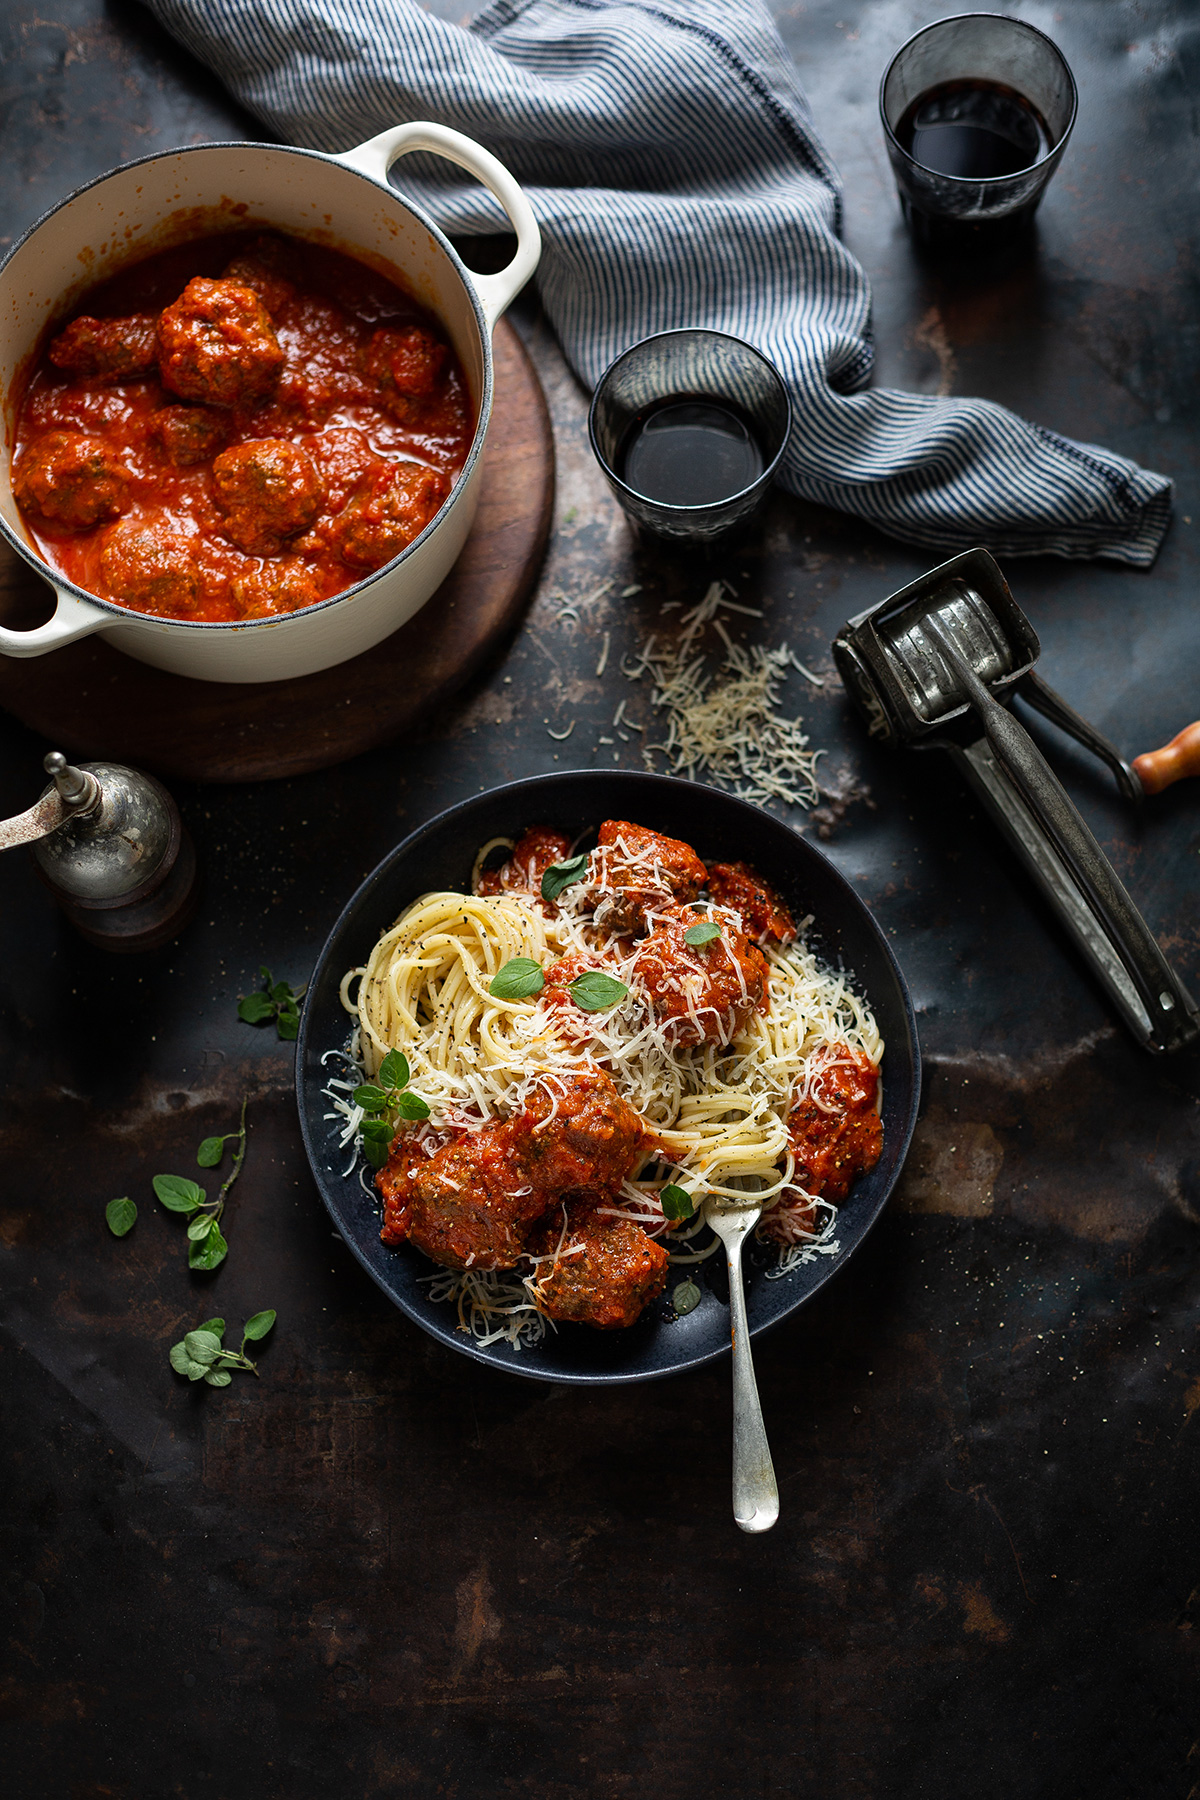 Spaghetti & meatballs recipe